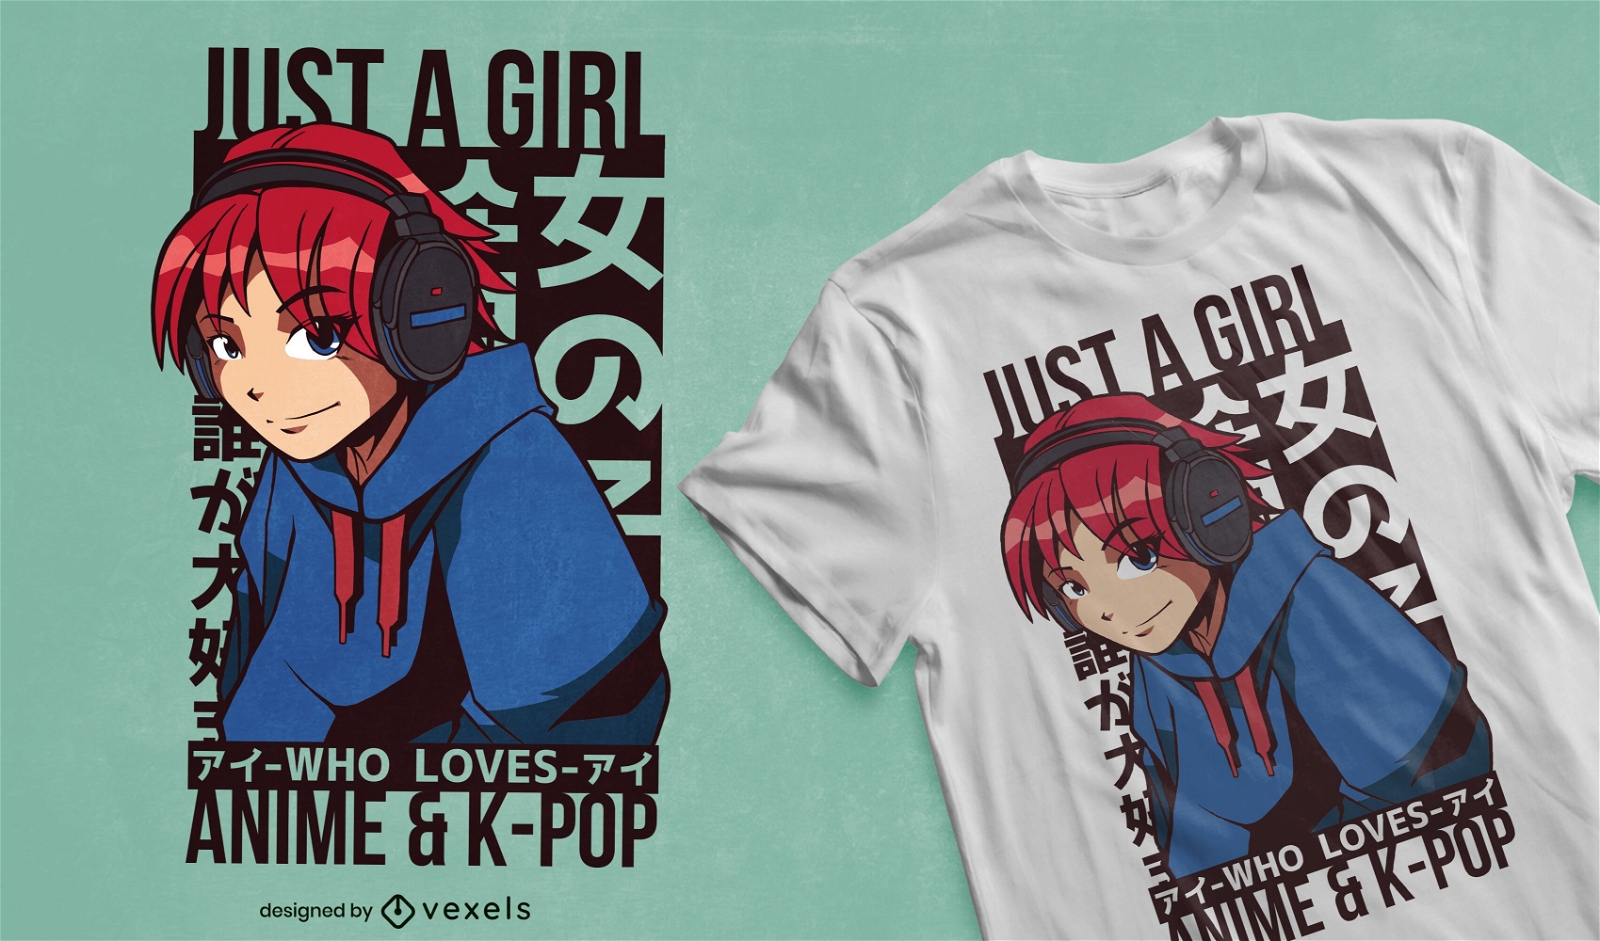 A garota adora o design de camisetas de anime e kpop